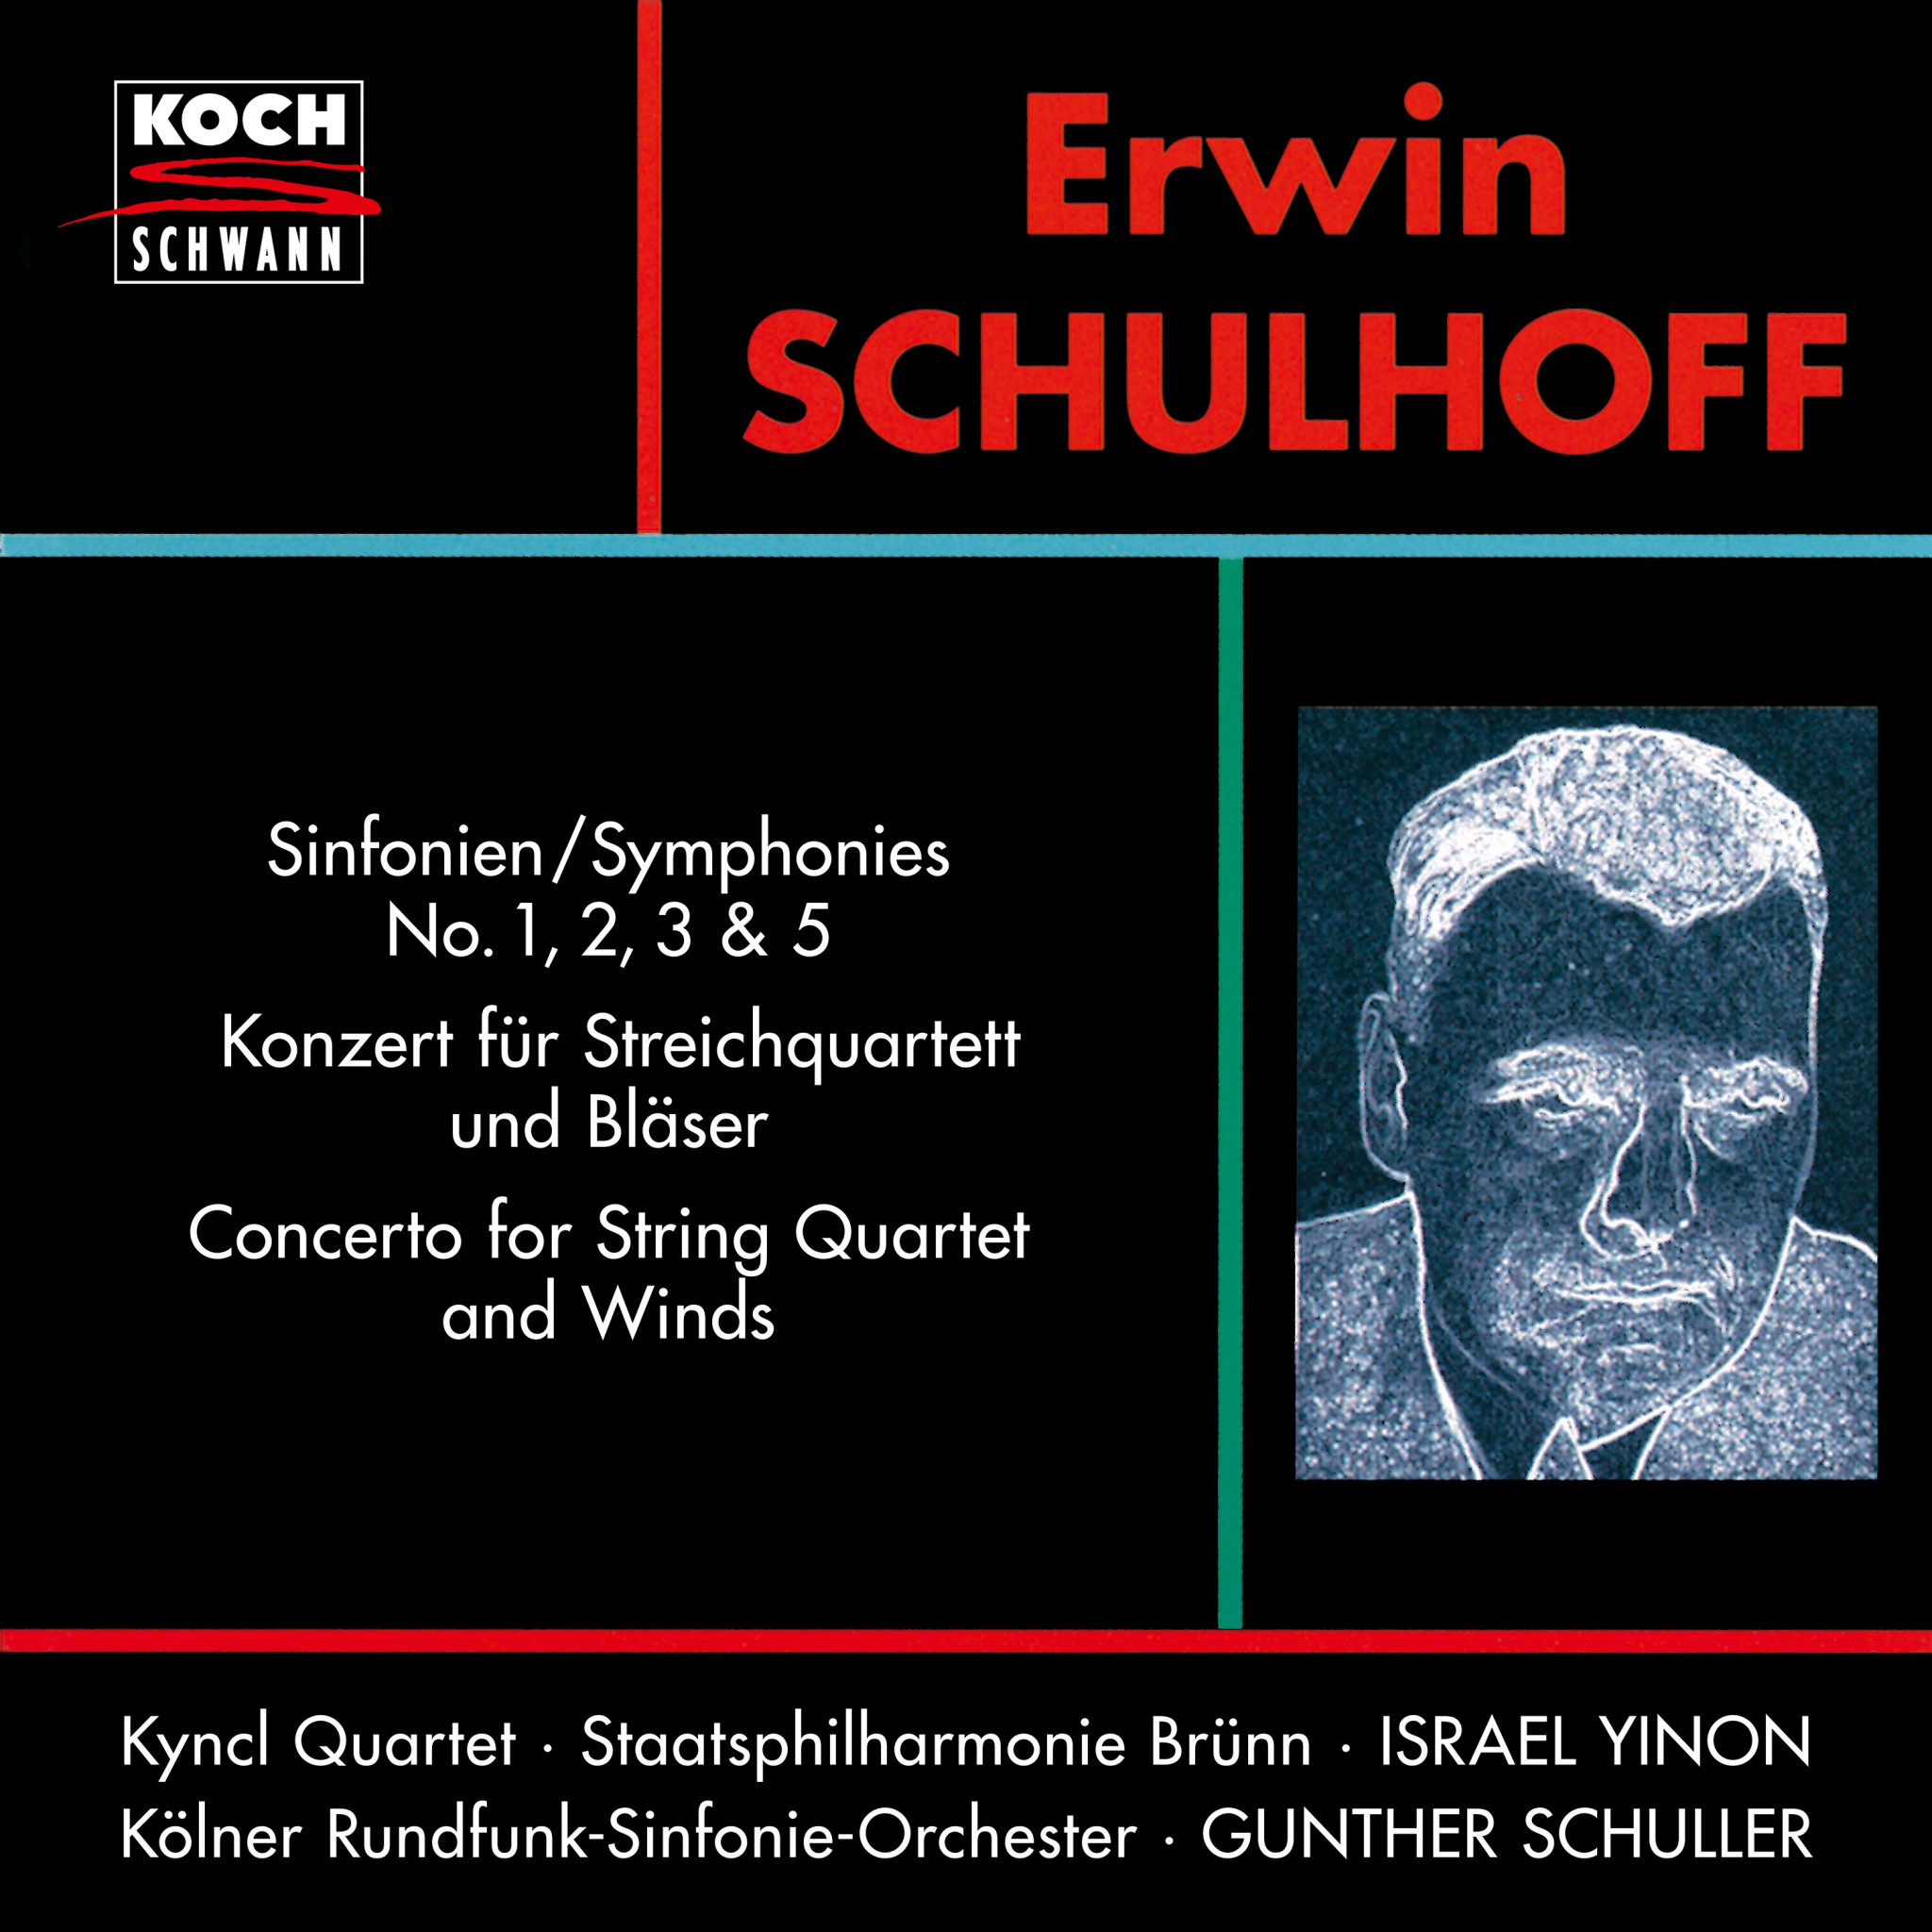 ERWIN SCHULHOFF